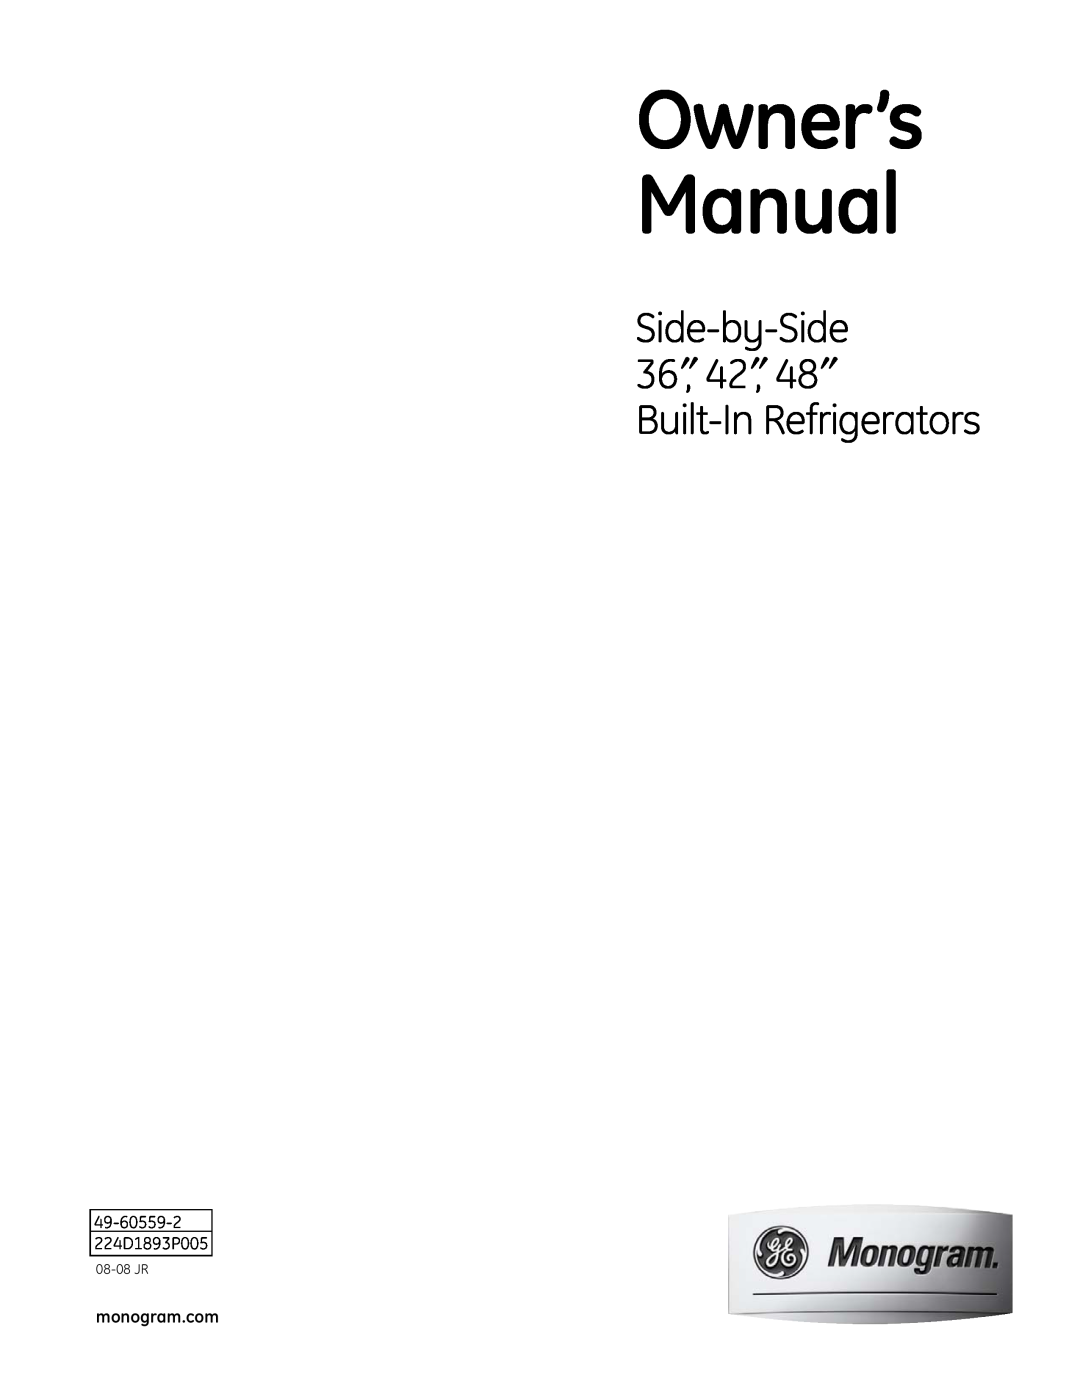 GE Monogram Side-by-Side Built-In Refrigerators owner manual Side-by-Side 36″, 42″, 48″ Built-In Refrigerators, 08-08 JR 